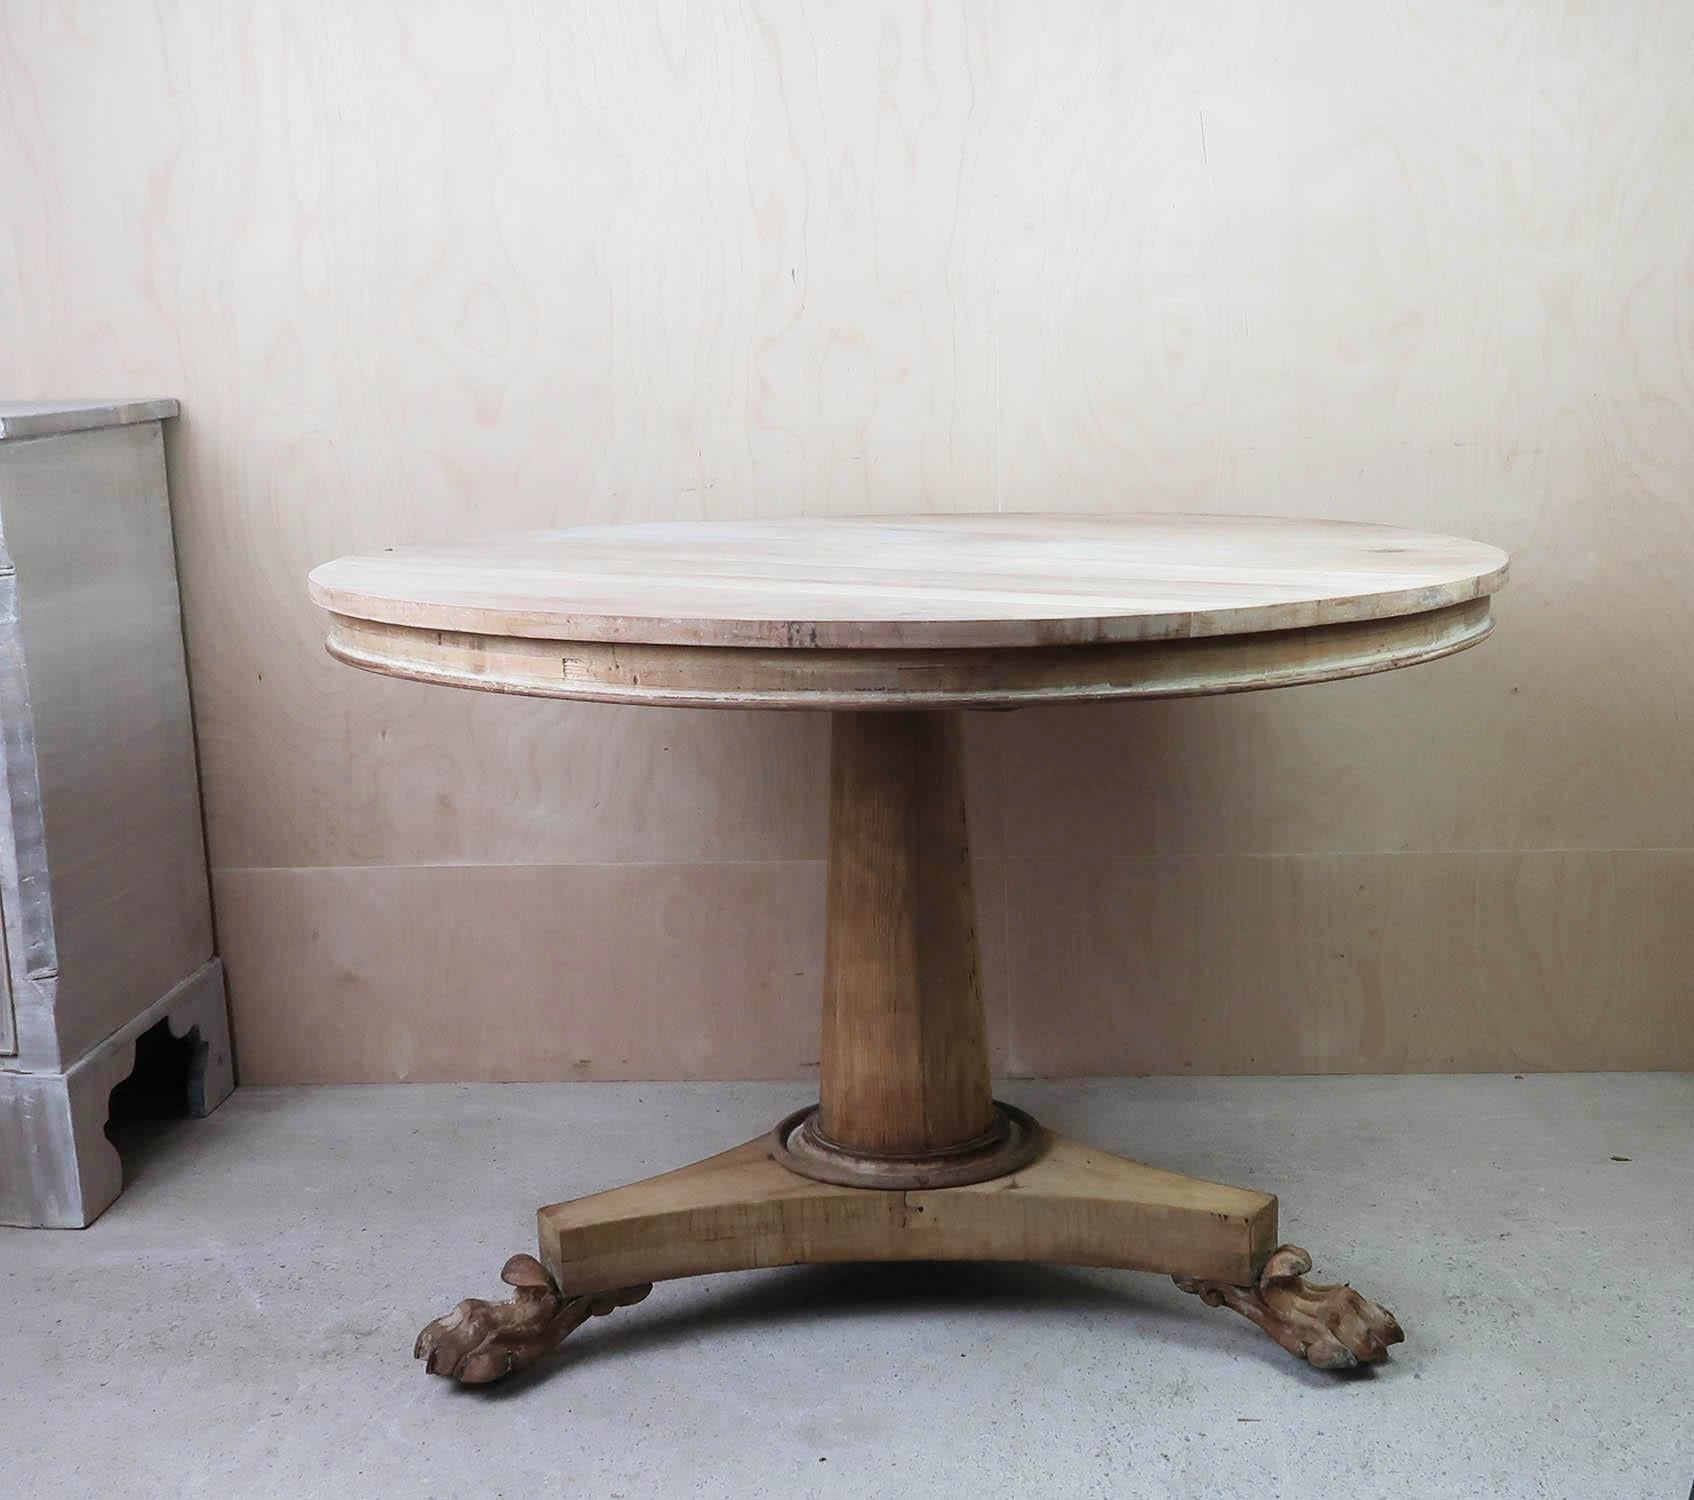 Bois Petite table ronde blanchie de style palladien ancien, anglaise, vers 1835